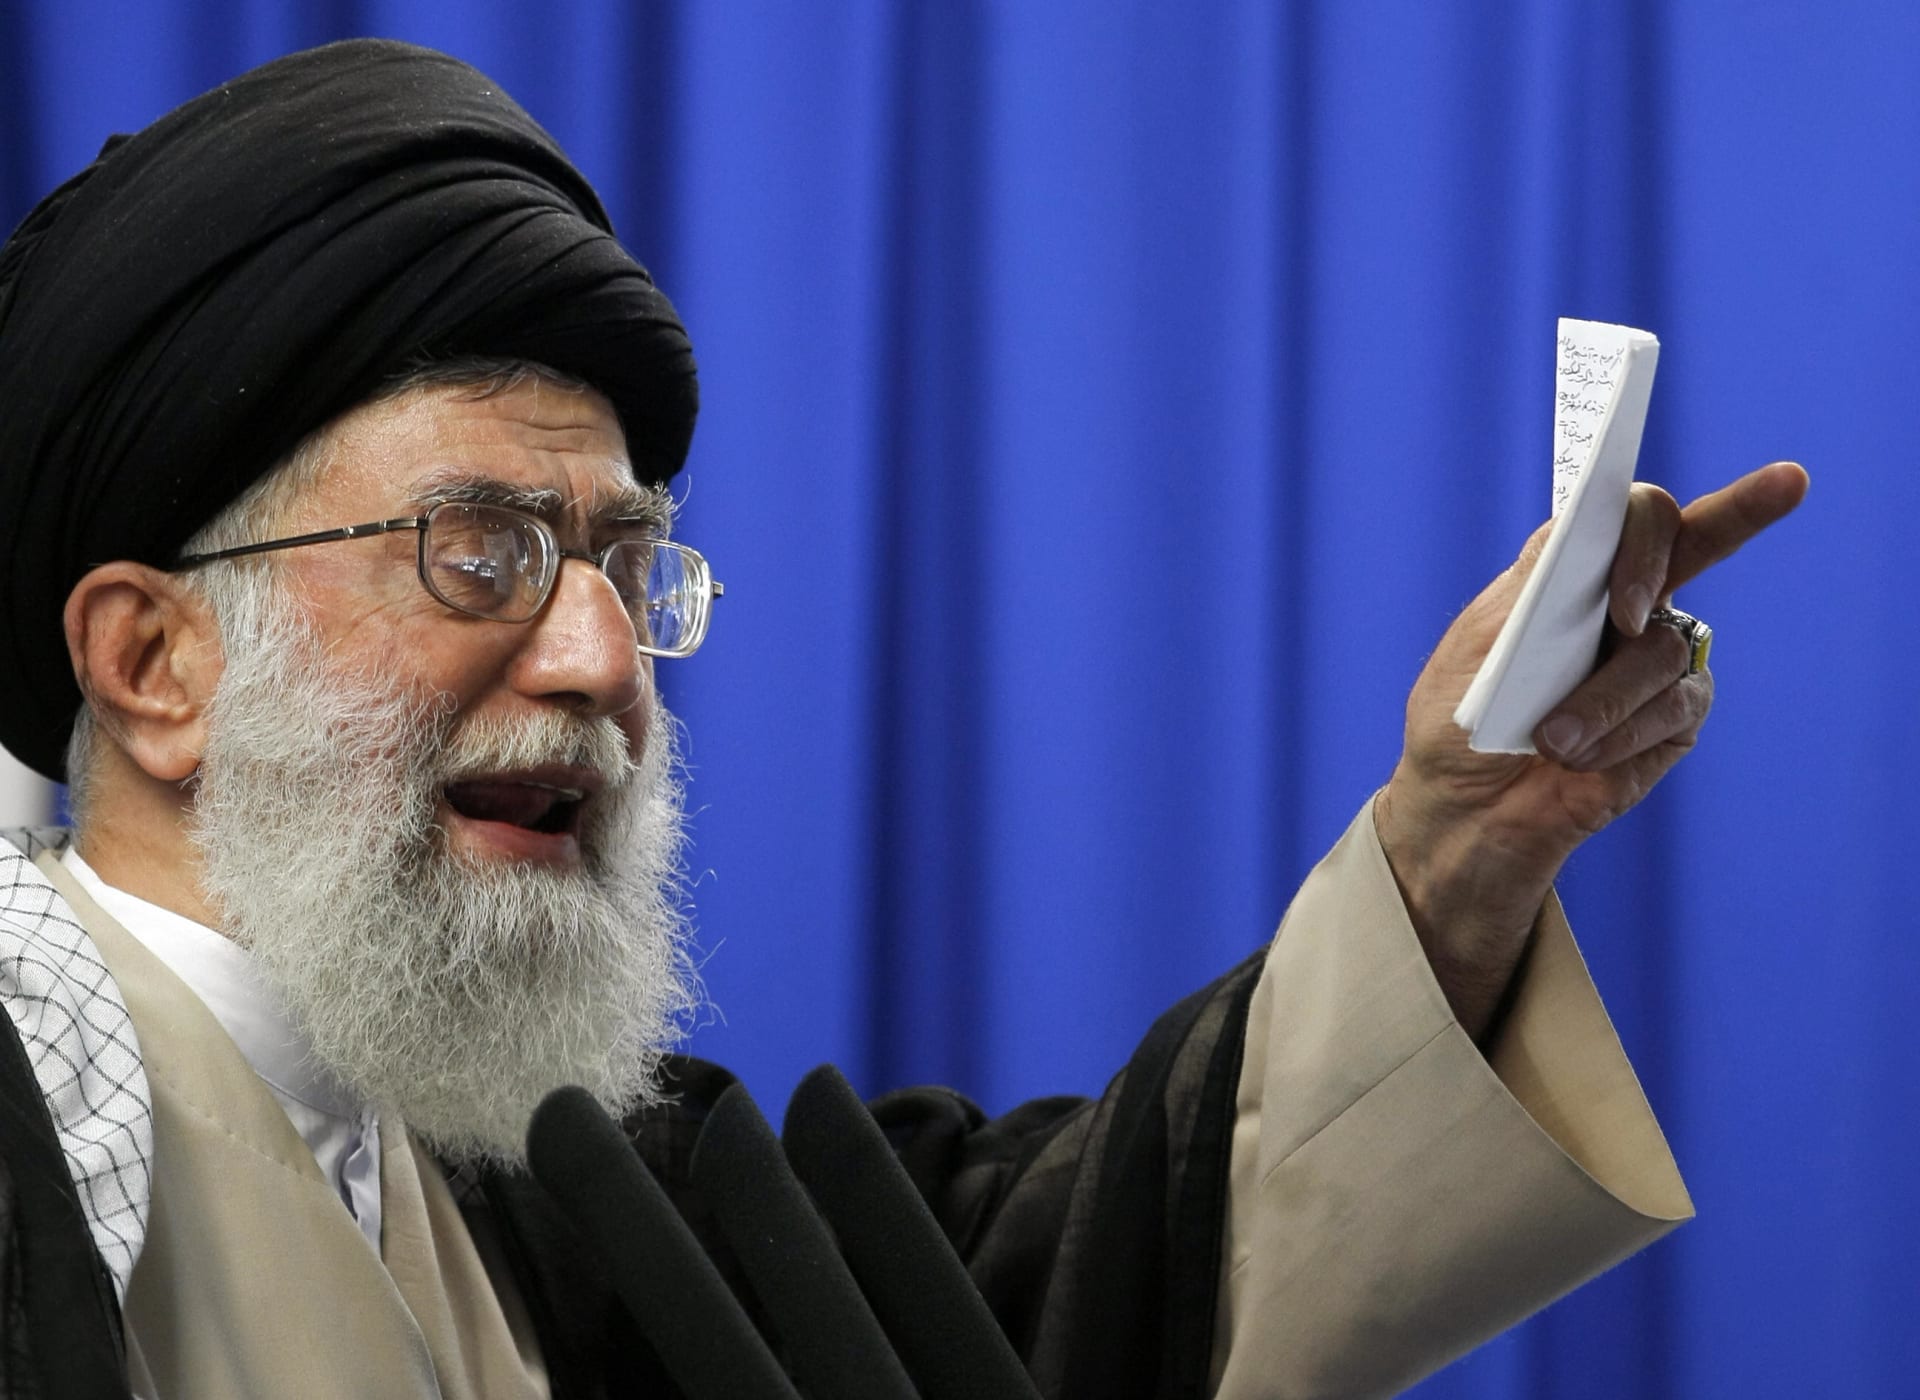 خامنئي: أمريكا تدبر مؤامرة تستهدف إيران ما بعد الاتفاق النووي